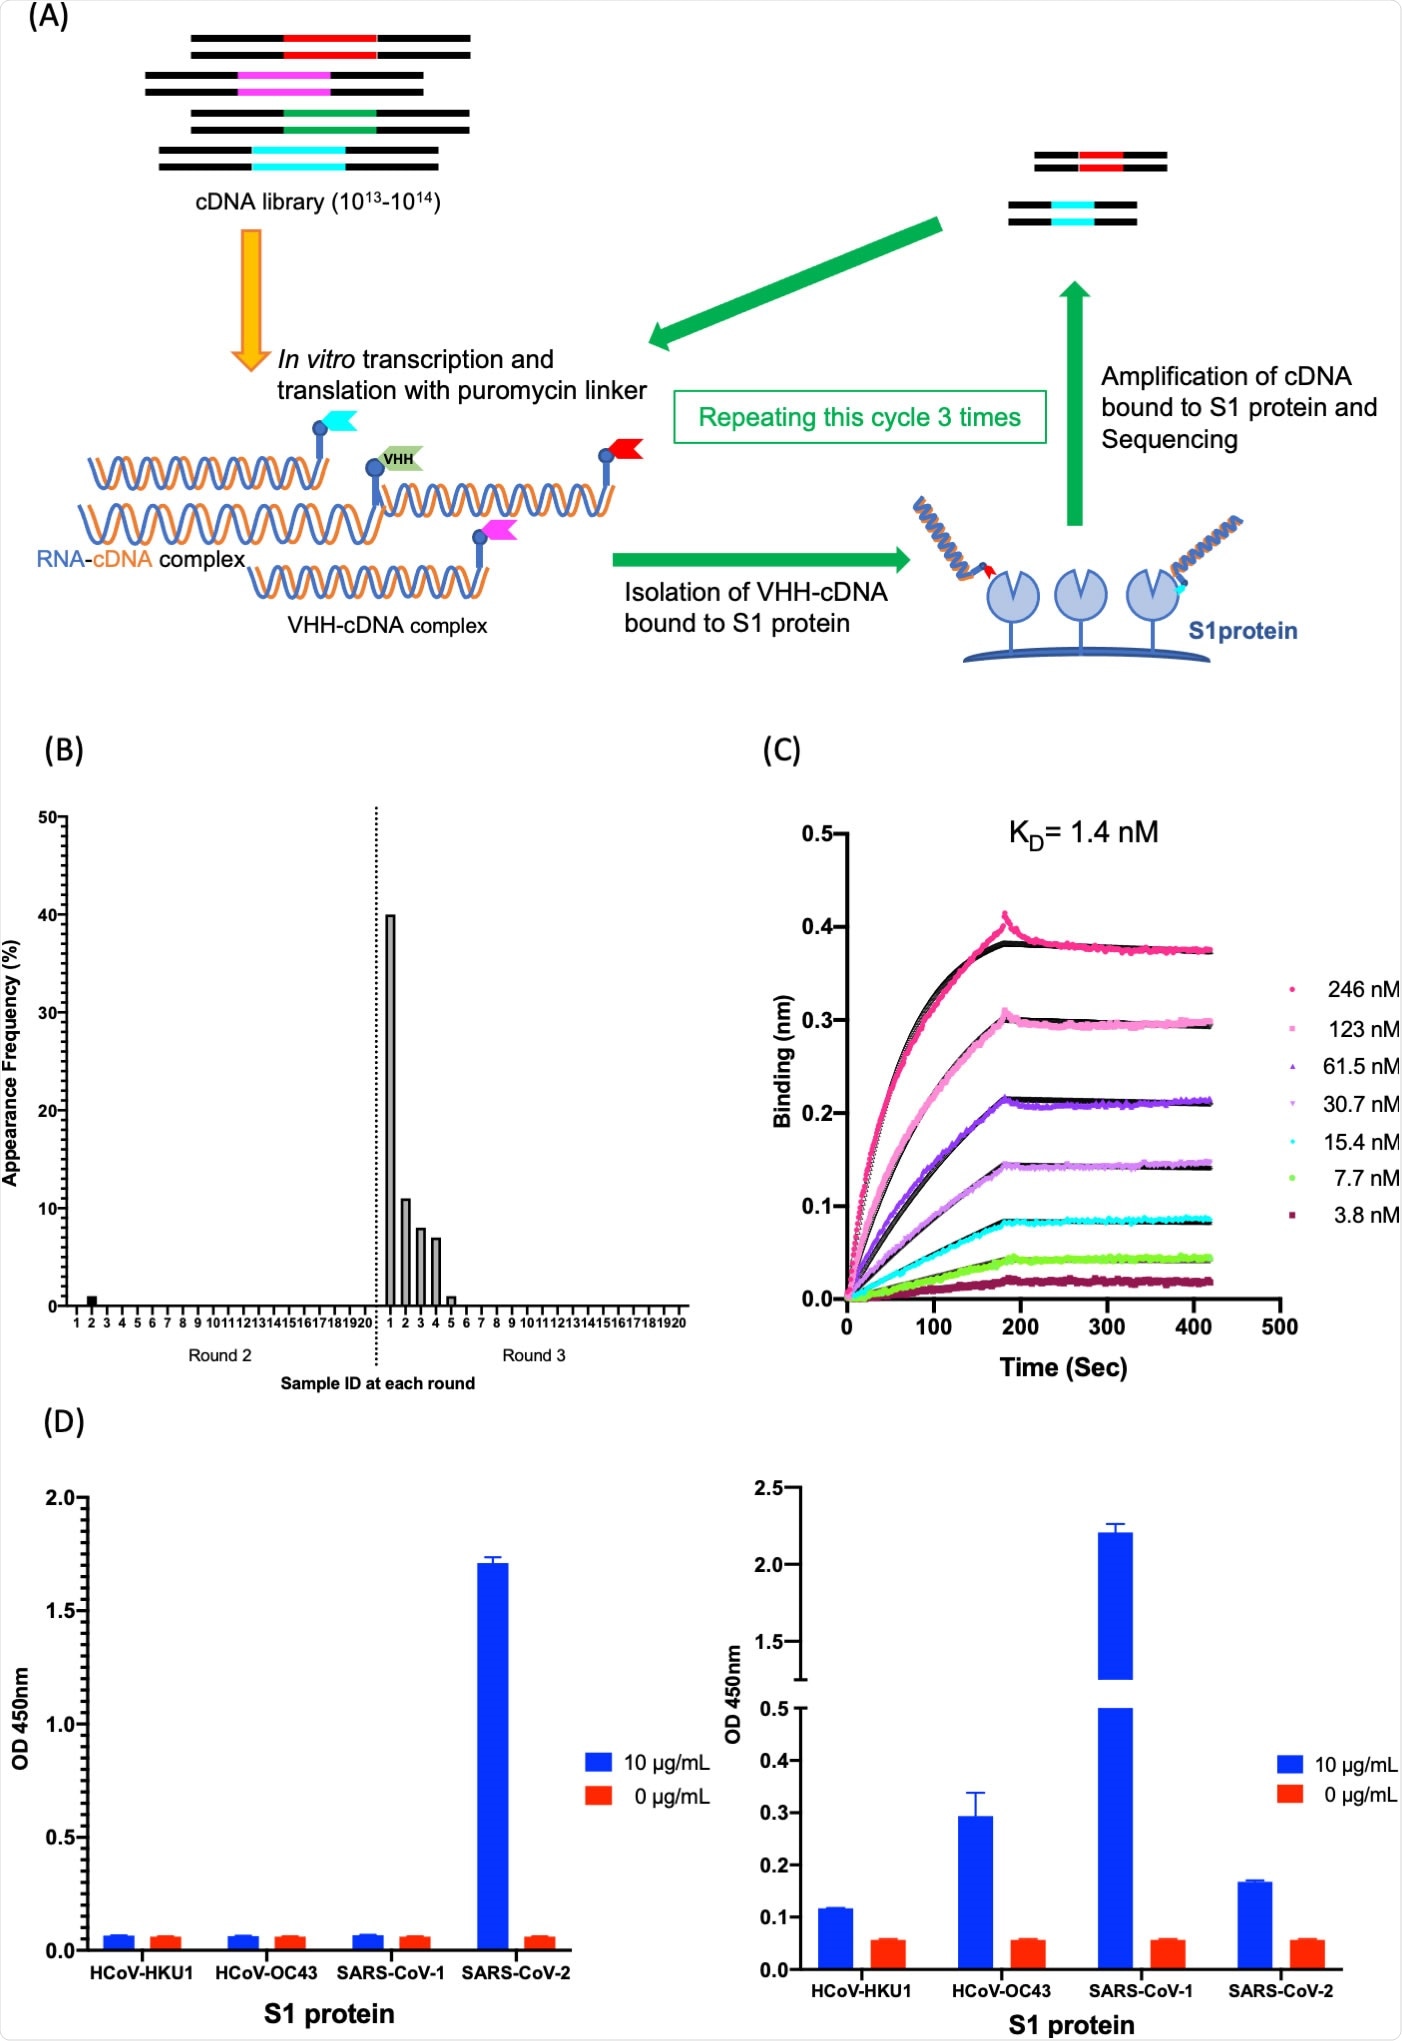 Isolamento e caracterização de K-874A. (a) Diagrama esquemático que mostra in vitro a selecção de VHHs contra a proteína de SARS-CoV-2 S1 usando o indicador de VHH-cDNA. In vitro a transcrição e a tradução de biblioteca de VHH-cDNA formam VHH ligado a seu mRNA com um linker do puromycin. o cDNA do mRNA ligado reverso-foi transcrito e o complexo de VHH-cDNA foi produzido. a proteína S1 imobilizada do complexo de VHH-cDNA da Alto-afinidade foi isolada, e seu cDNA foi amplificado. Três círculos da selecção foram executados, as bibliotecas do cDNA dos círculos 2 e 3 foram arranjadas em seqüência, e os candidatos de anti-SARS-CoV-2 VHH foram traduzidos. (b) Distribuição de freqüência das seqüências de ácido aminado que correspondem aos candidatos do anticorpo de VHH que visam subunidades de SARS-CoV-2 S1 nas bibliotecas selecionadas de VHH. A identificação “1